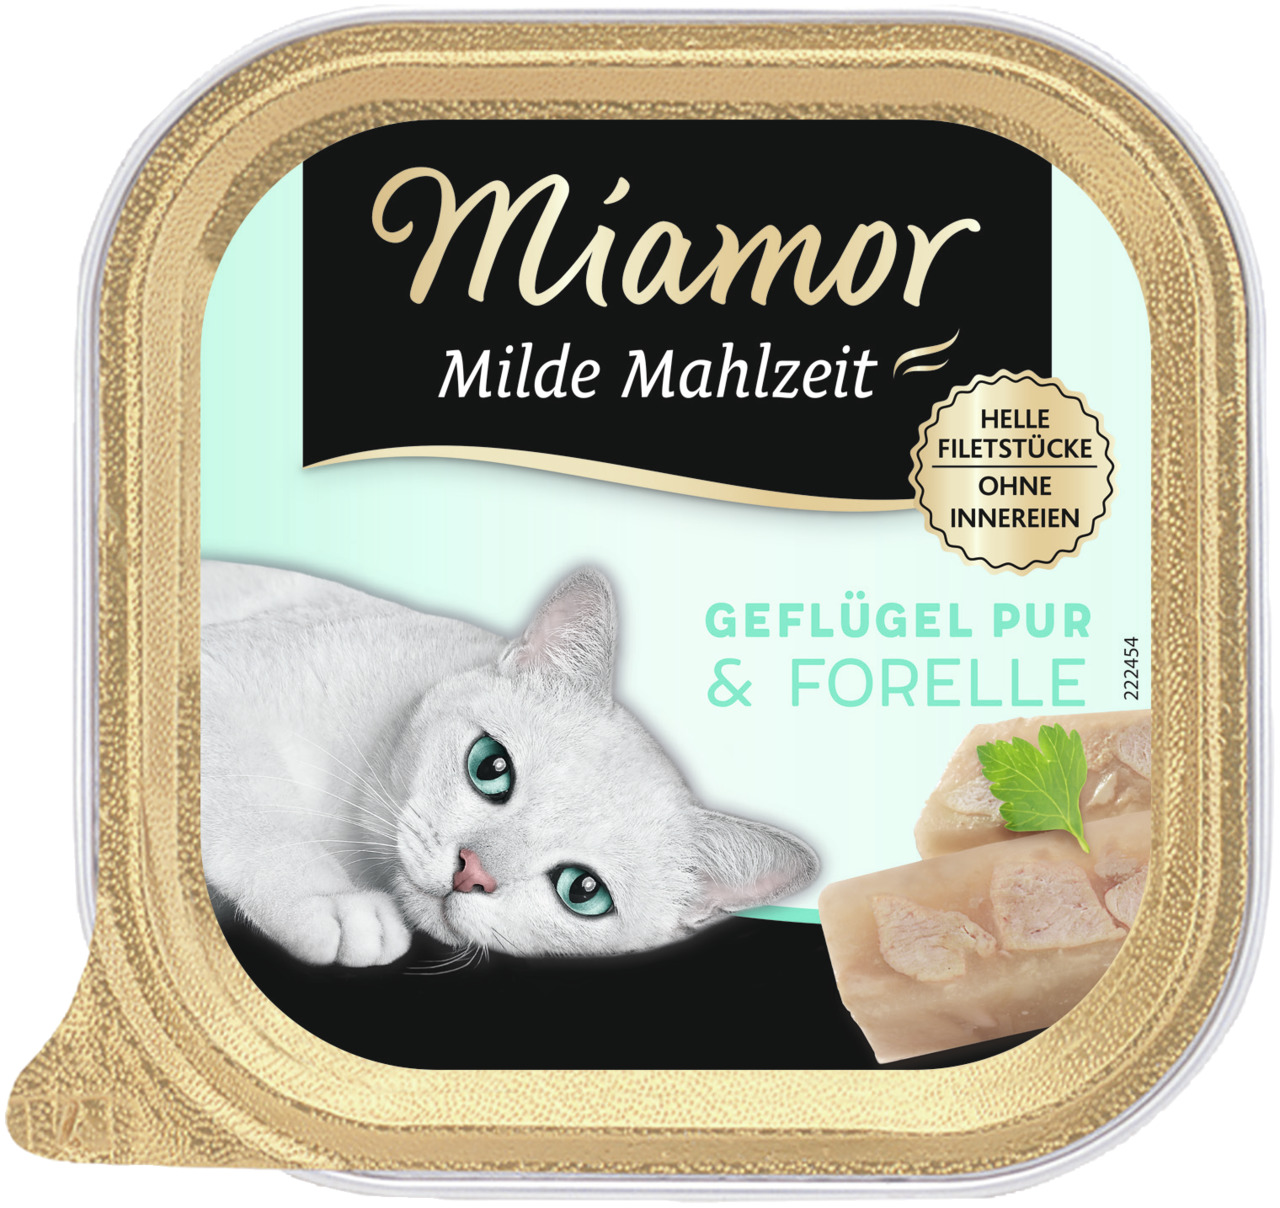 Sparpaket 32 x 100 g Miamor Milde Mahlzeit Geflügel pur & Forelle Katzen Nassfutter